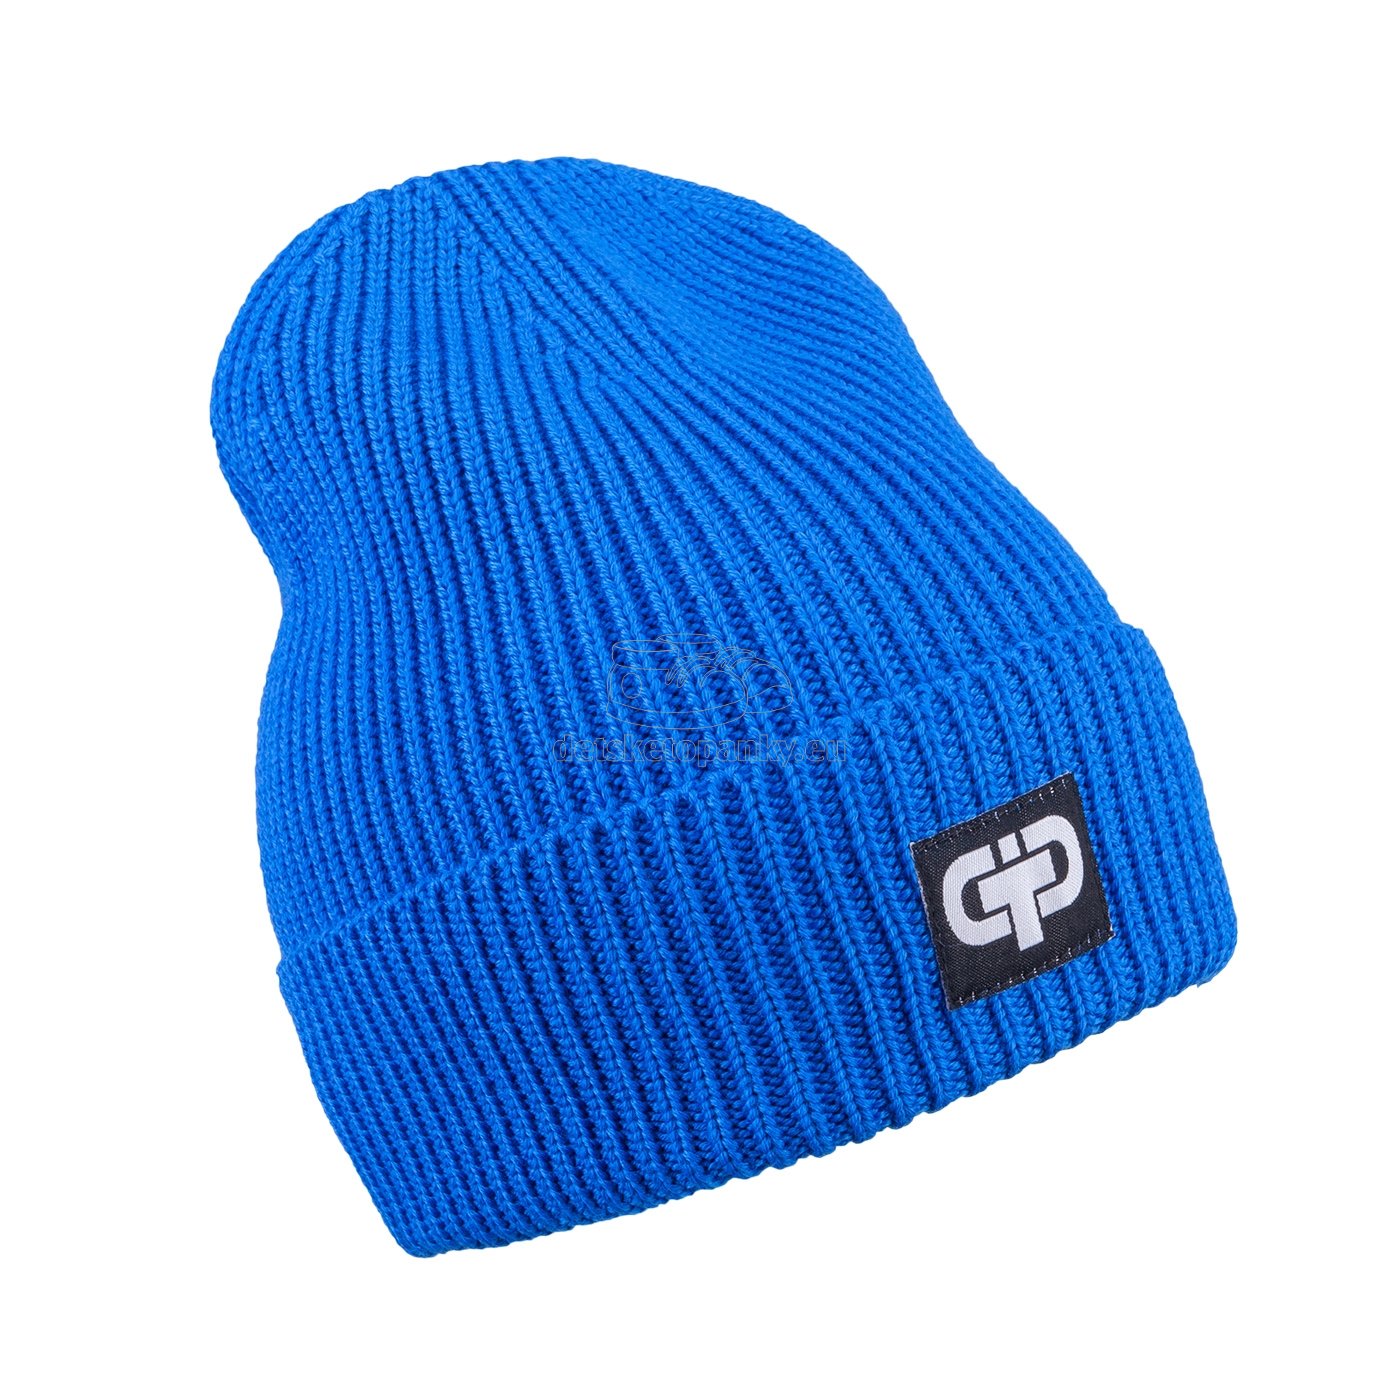 Detská zimná čapica TUTU 3-005200 blue